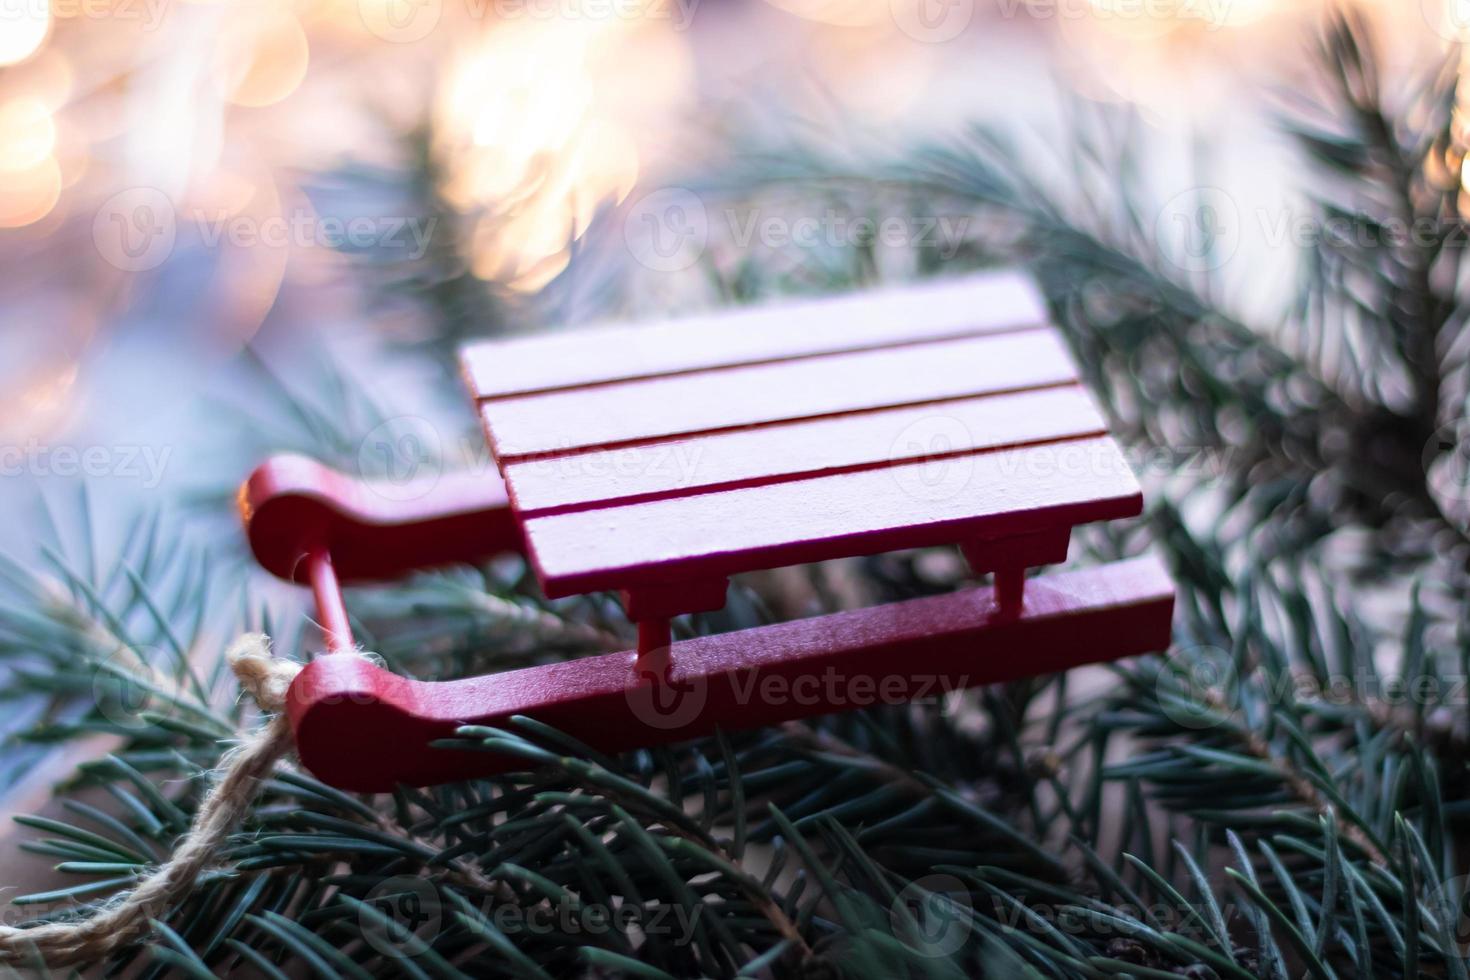 jouet d'arbre de noël petit traîneau en bois rouge sur le fond d'un arbre de noël et de guirlandes photo